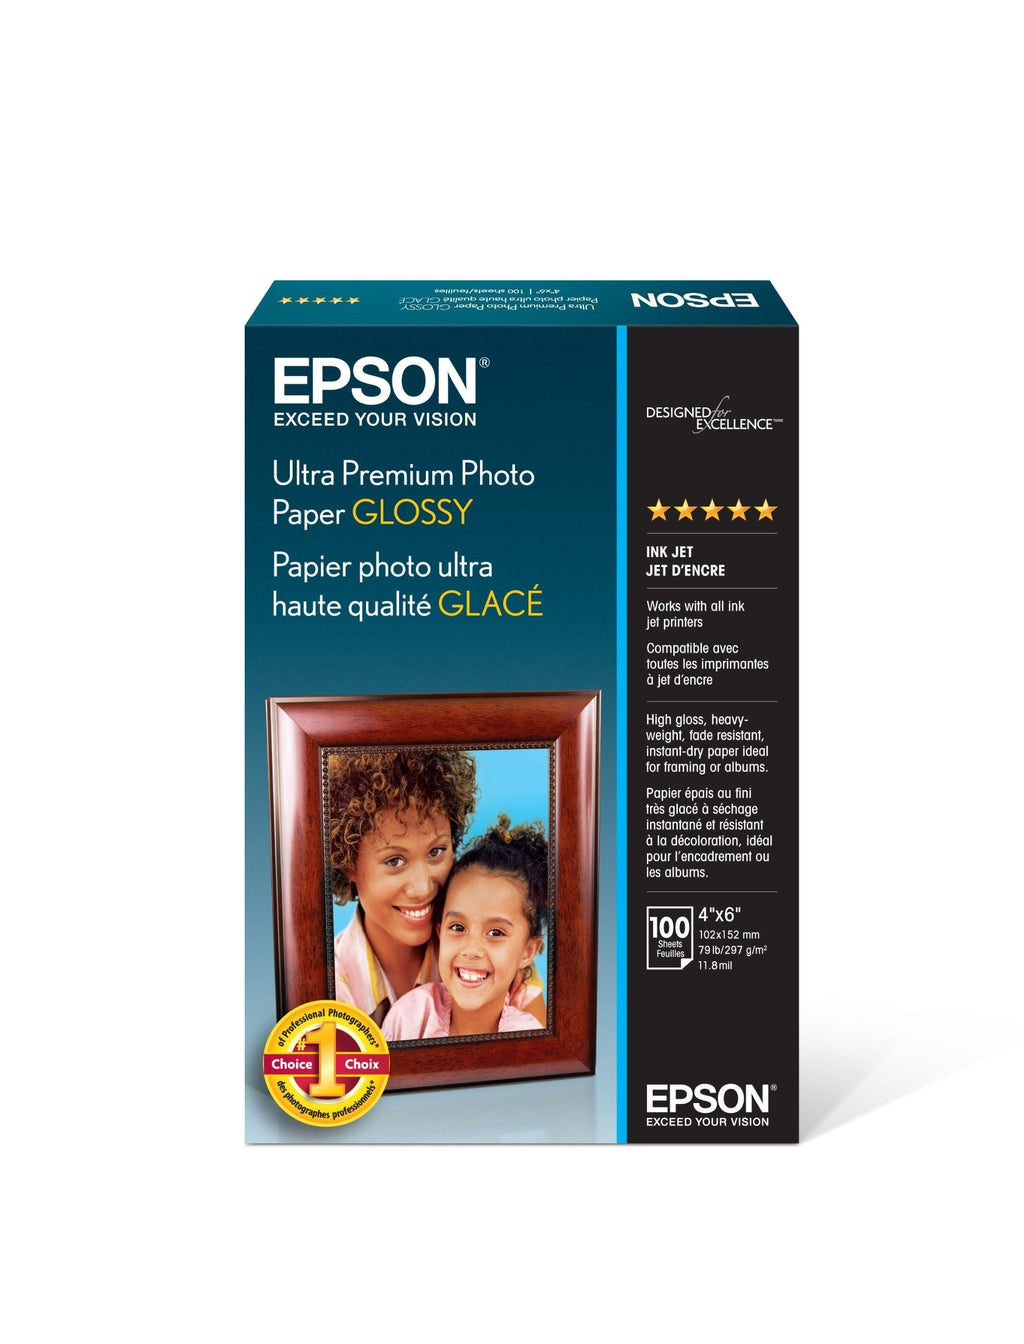 Epson Ultra Premium Photo Paper Glossy - S042174, 4" x 6" (100 sheets),White Single - LeoForward Australia